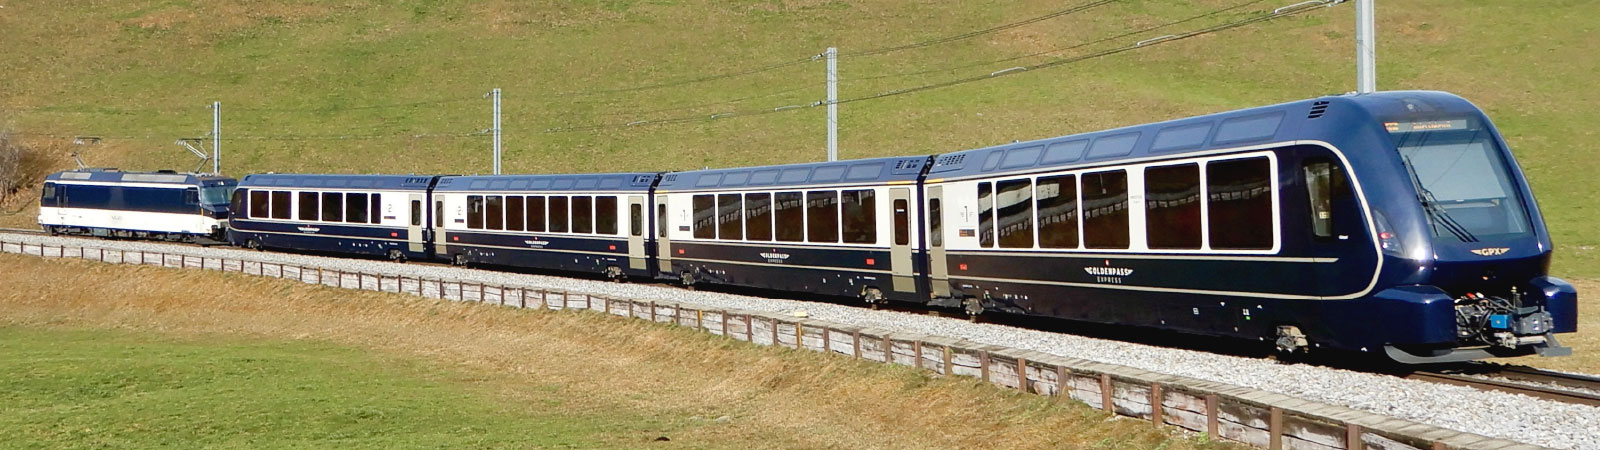 ゴールデンパスエクスプレス 新パノラマ客車 (2024 年発売予定) スイス・モントルーーインターラーケンオストールツェルンを結ぶゴールデンパスライン。2022年12月11日に軌間可変装置搭載車両の登場により、ツヴァイジンメンでの乗り換えなしで絶景の旅を愉しめるようになりました。